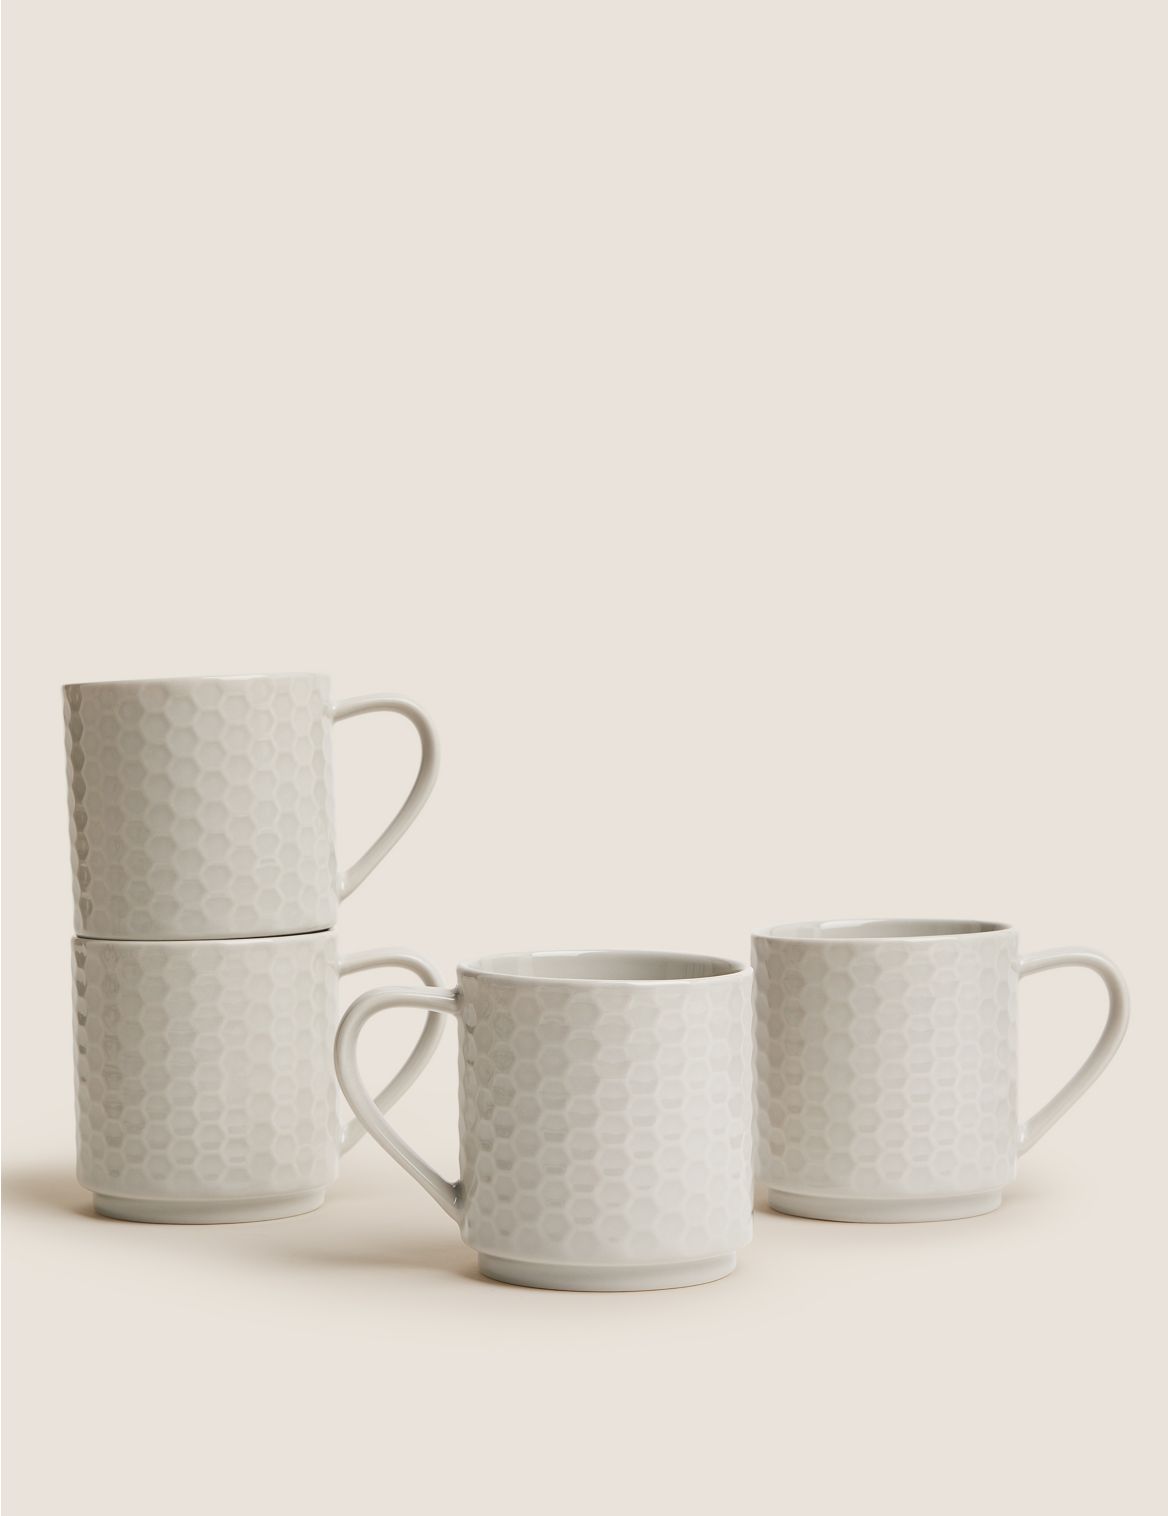 Image of Set of 4 Stacking Embossed Mugs brown